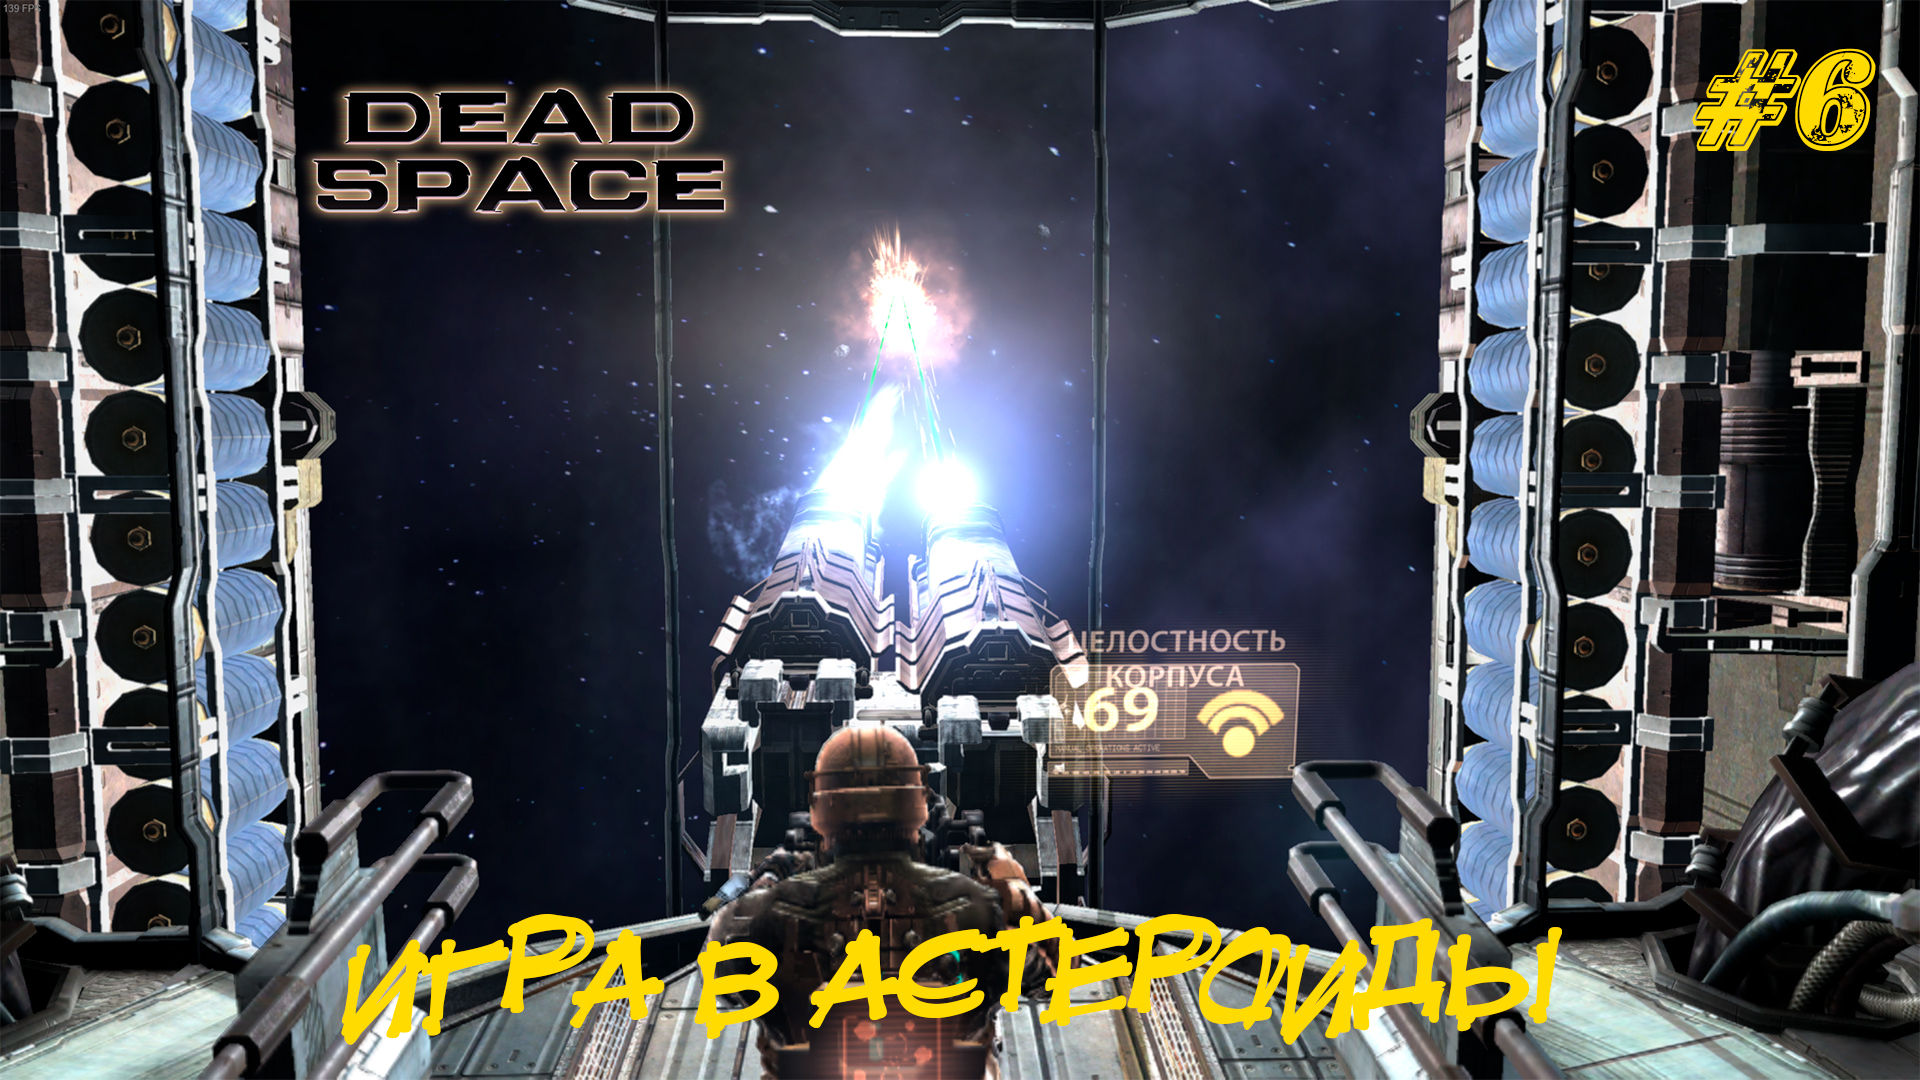 Игры на пространство. Космическая станция Dead Space.